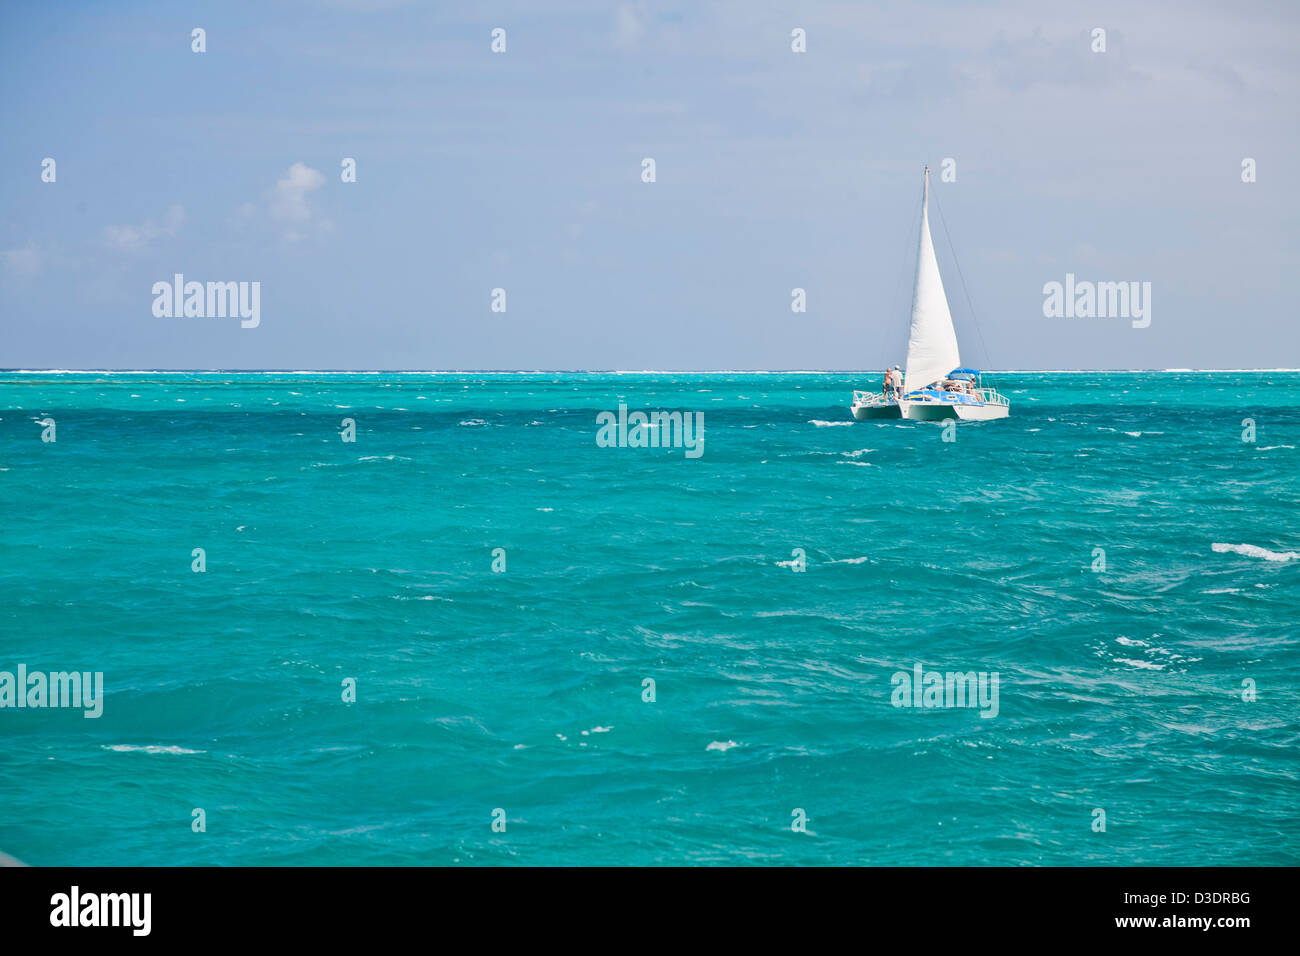 Trimarano vela vela in turchese brillante acqua tropicale in Grand Cayman Foto Stock